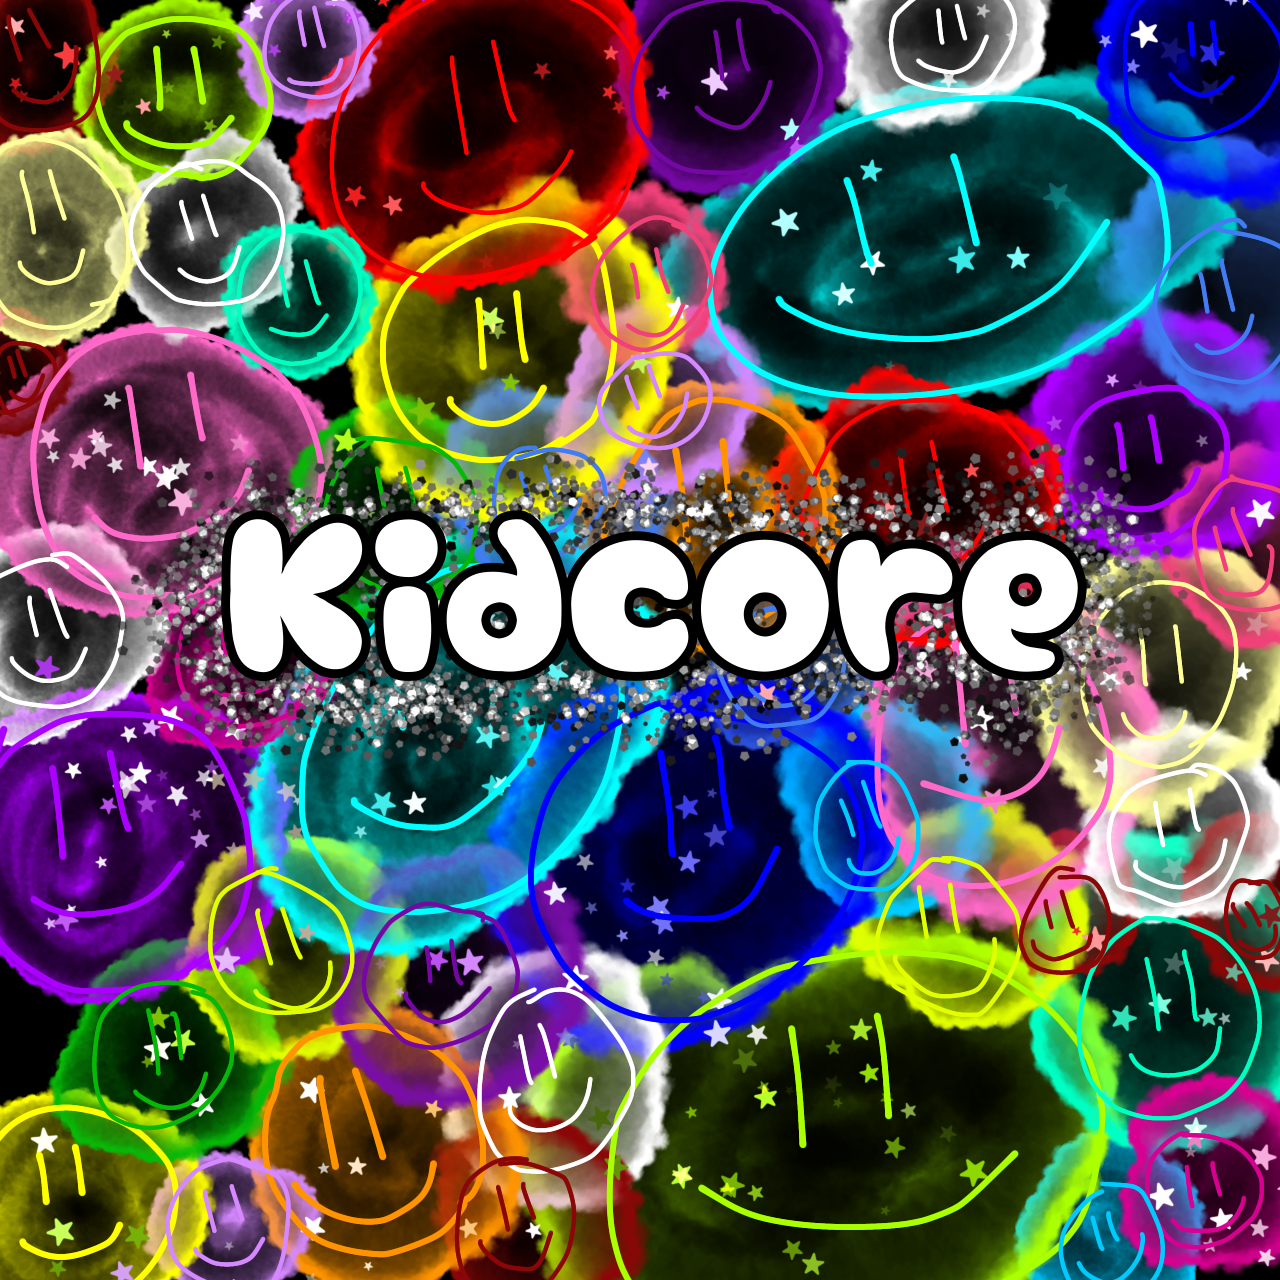 Kidcore